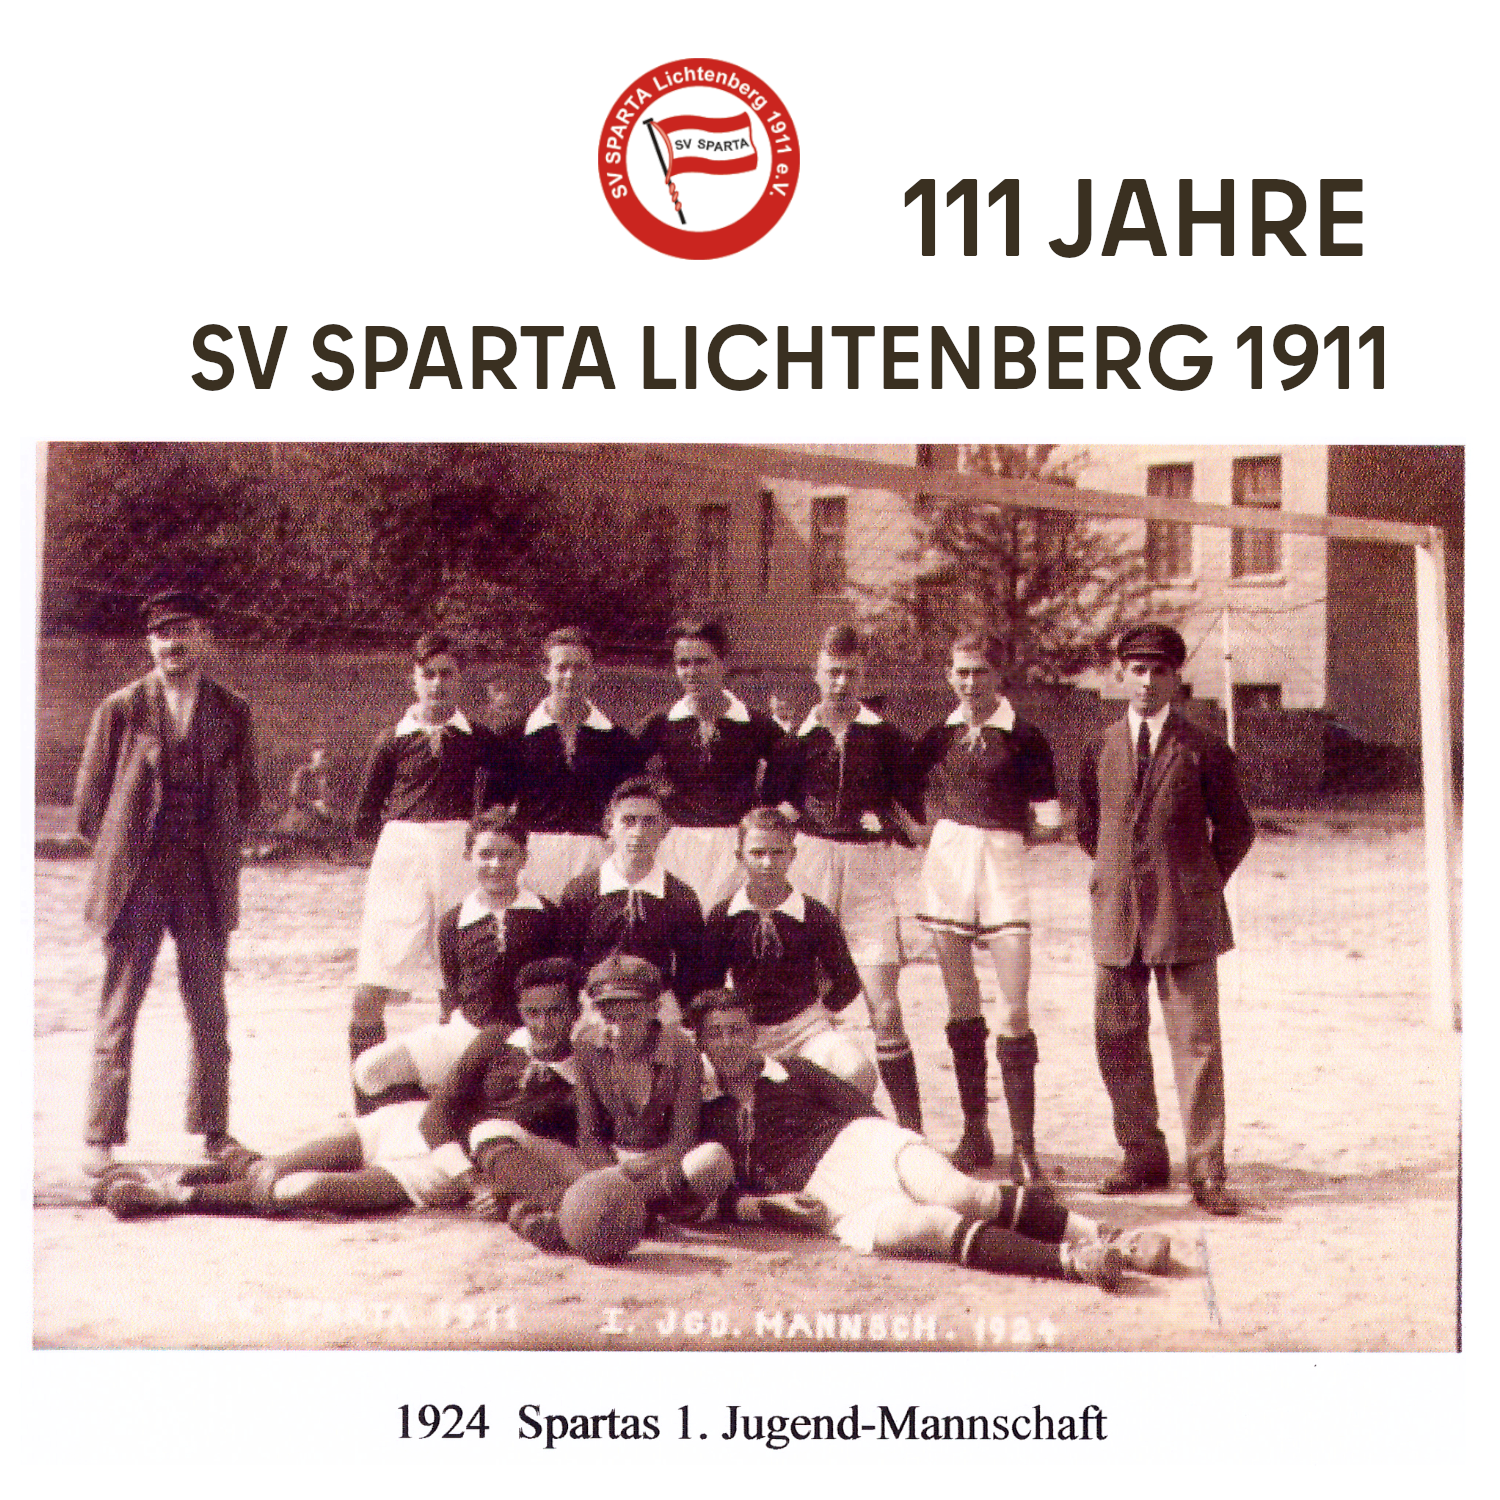 SV Sparta Jugend-Mannschaft, 1924